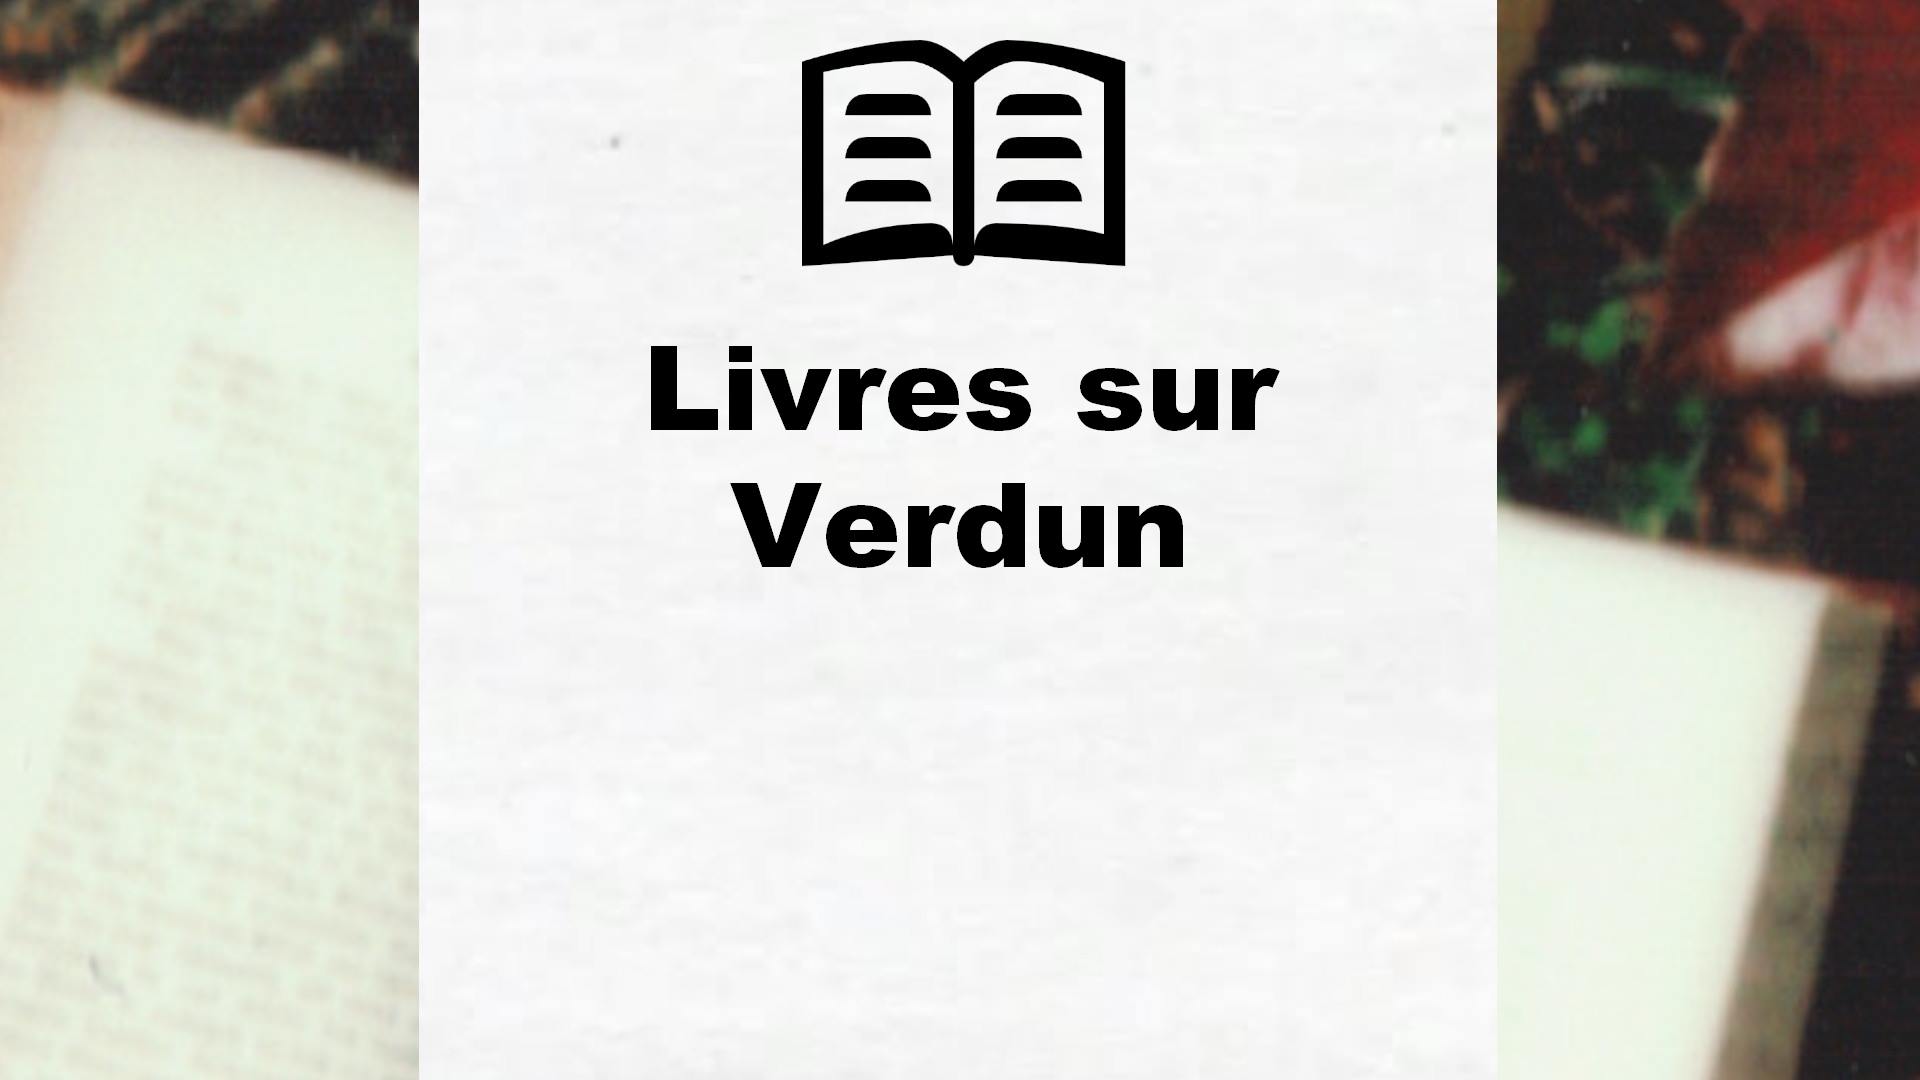 Livres sur Verdun